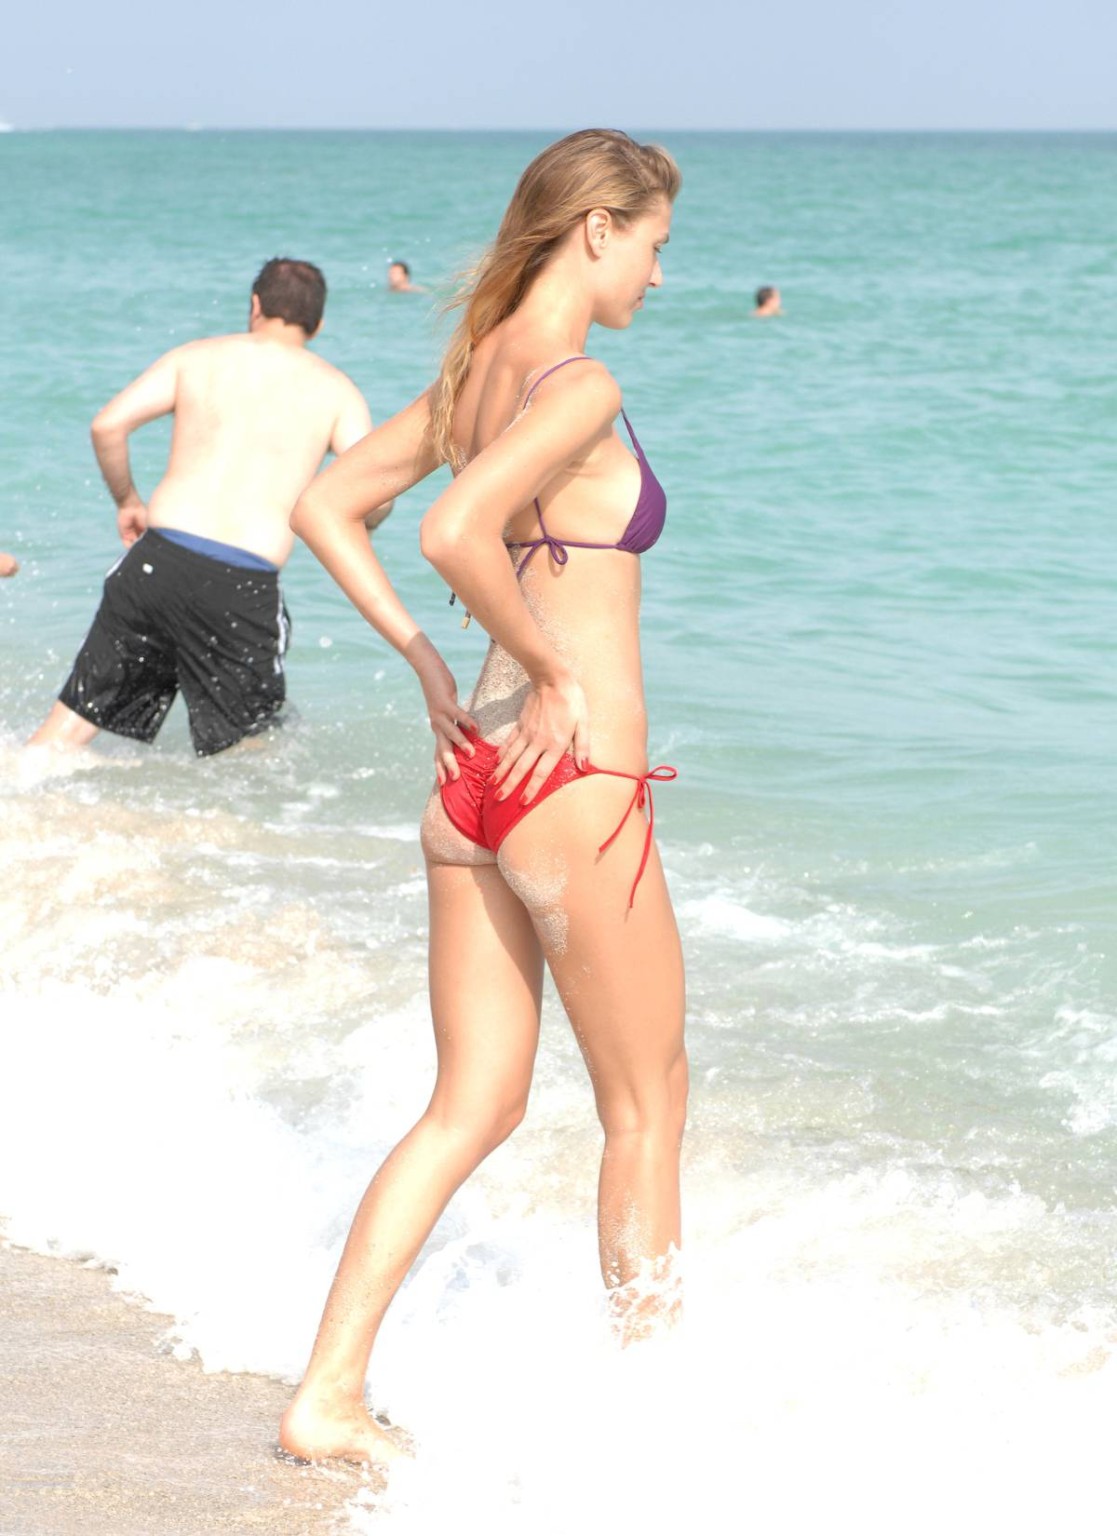 Olga kent che mostra pokies camel-toe in bikini bagnato su una spiaggia a miami
 #75207995